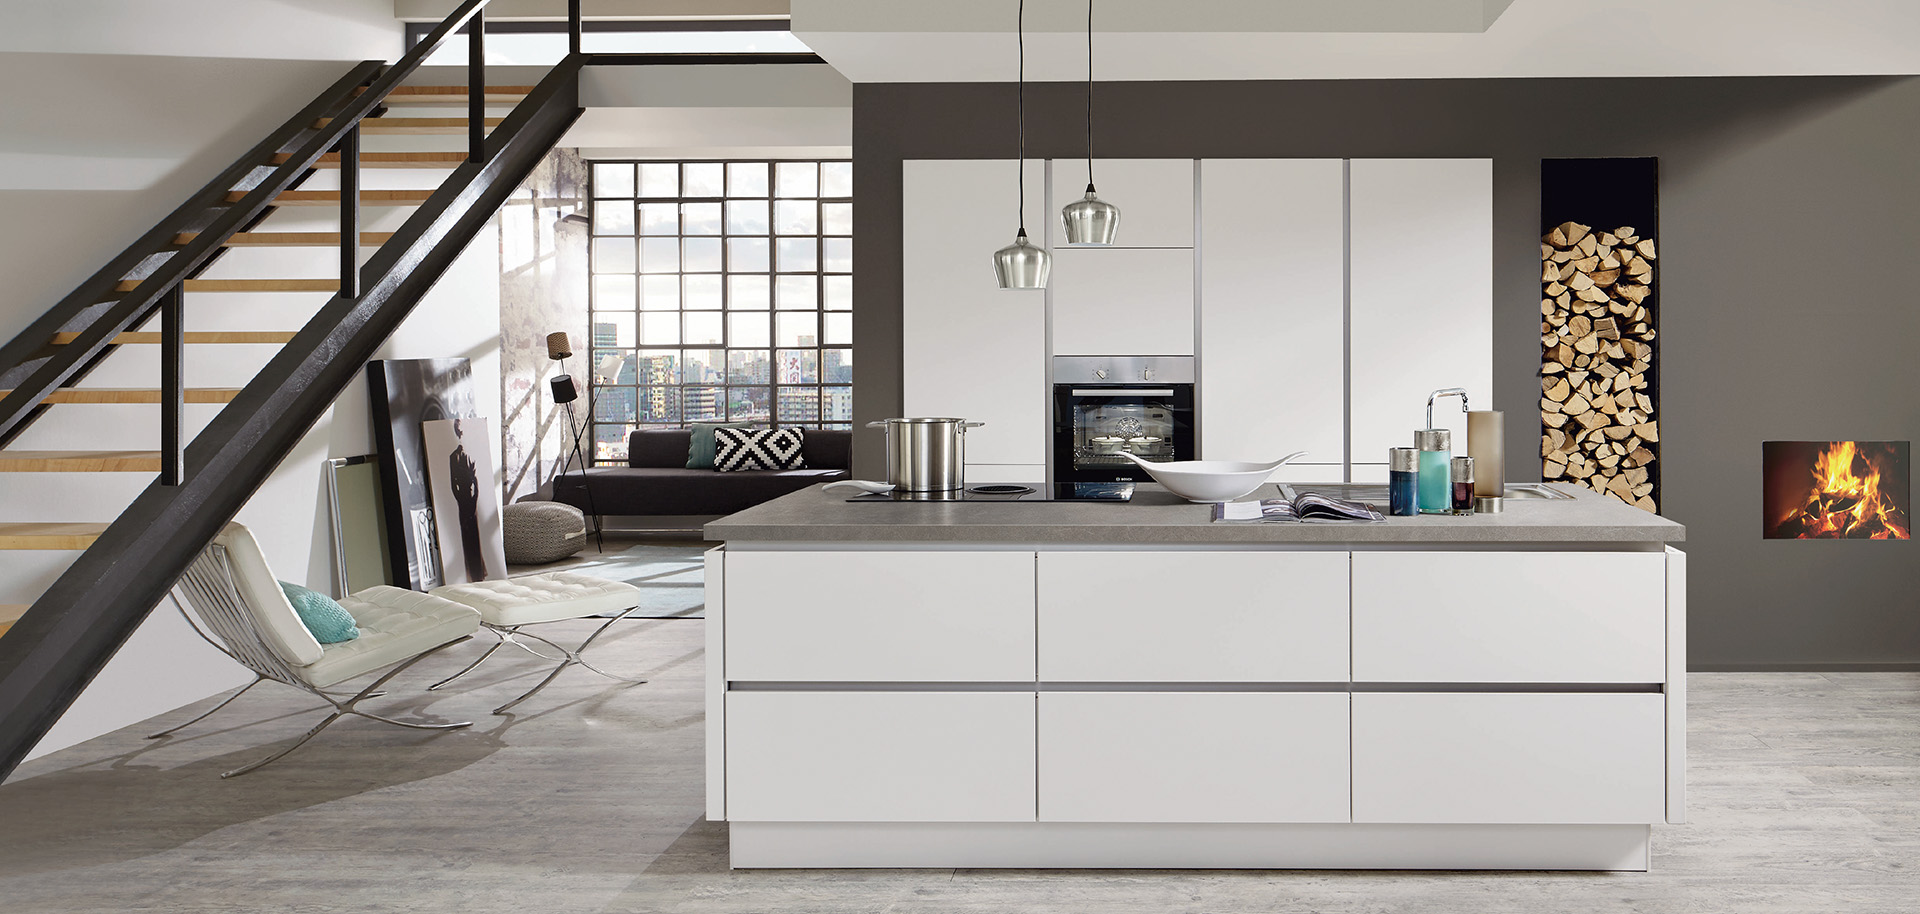 Interior de cocina moderna con líneas limpias que presenta gabinetes blancos, electrodomésticos de acero inoxidable y una acogedora área de estar contigua con una chimenea.